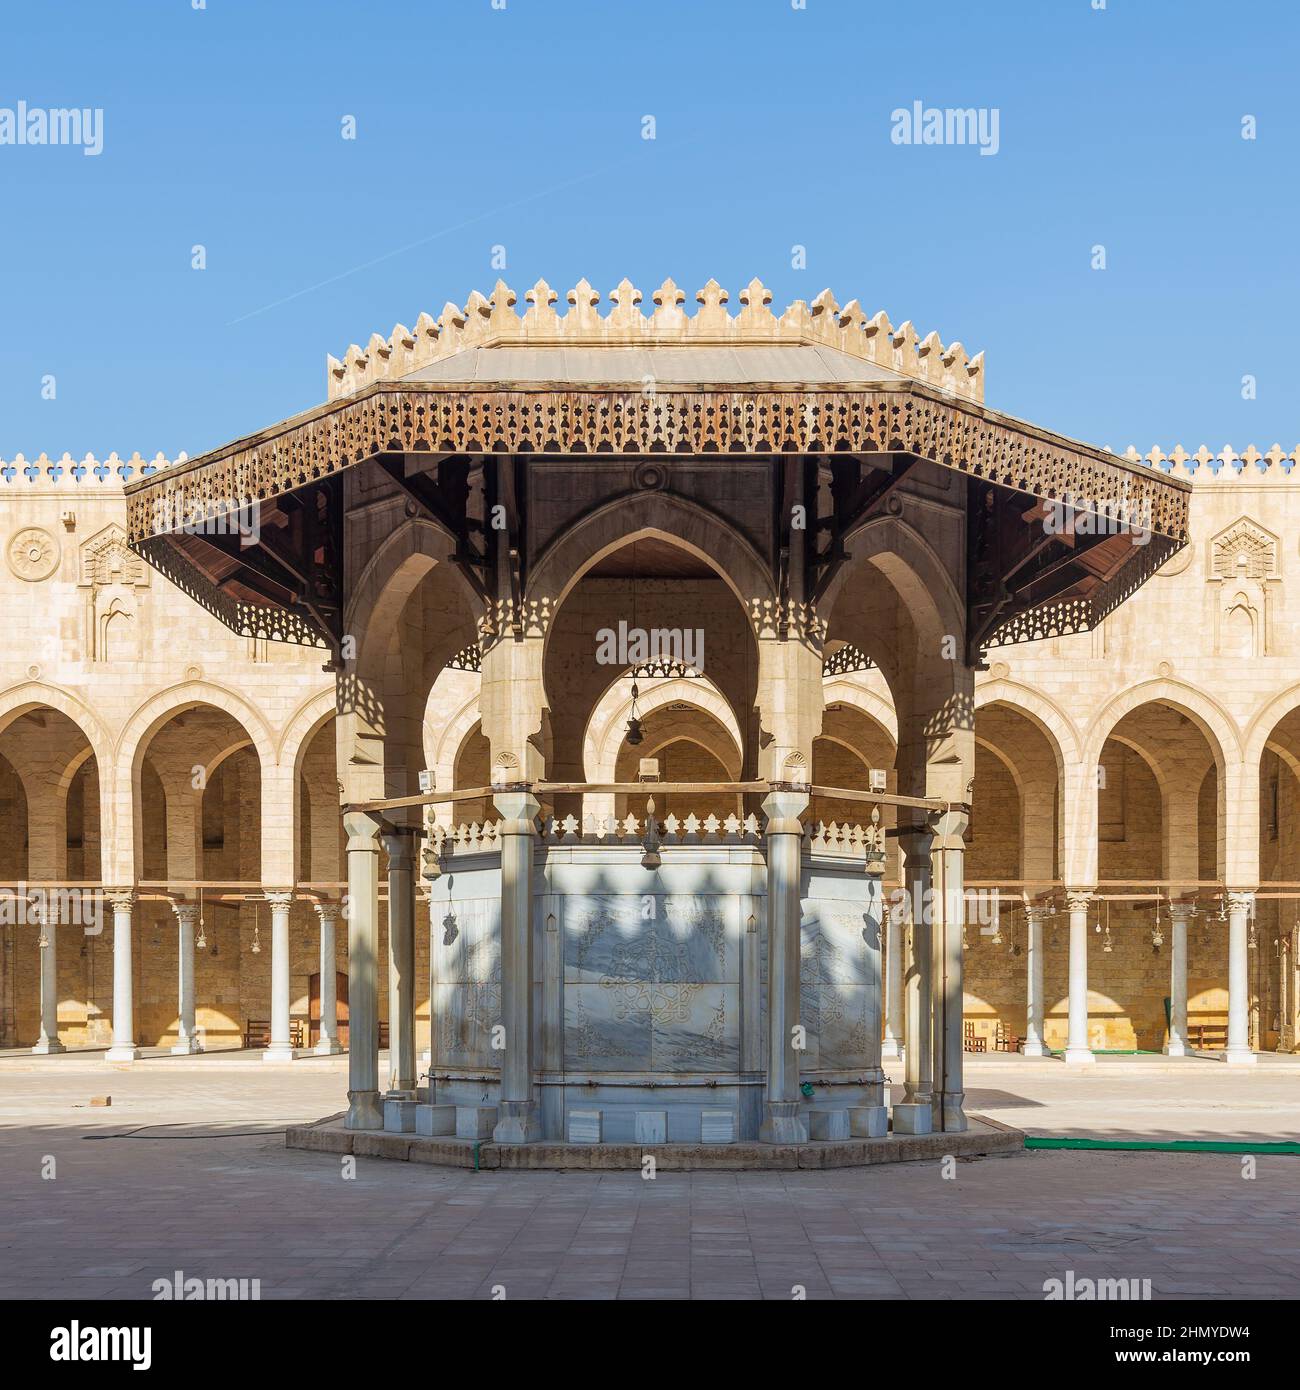 Fuente de ablución que mediaba en el patio de la mezquita histórica pública del Sultán al Muayyad, con fondo de corredor arqueado en la parte trasera, El Cairo, Egipto Foto de stock